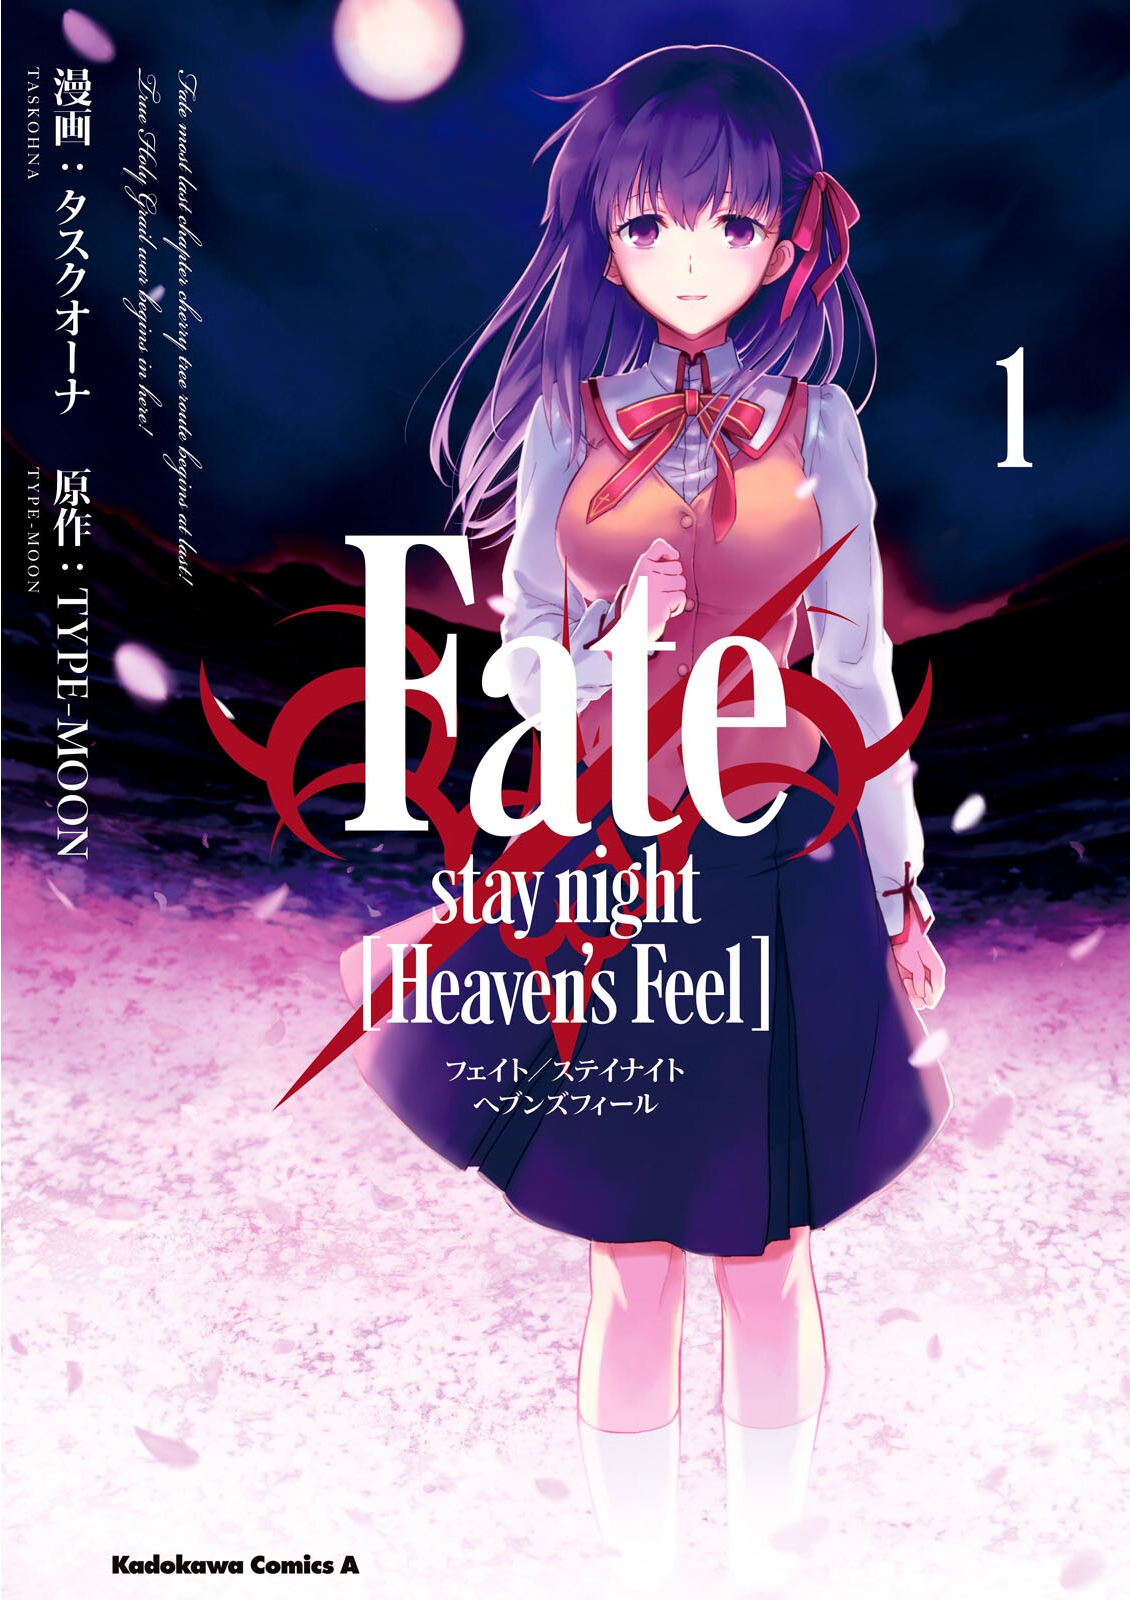 Fate/stay night: Heaven's Feel - Wikipedia